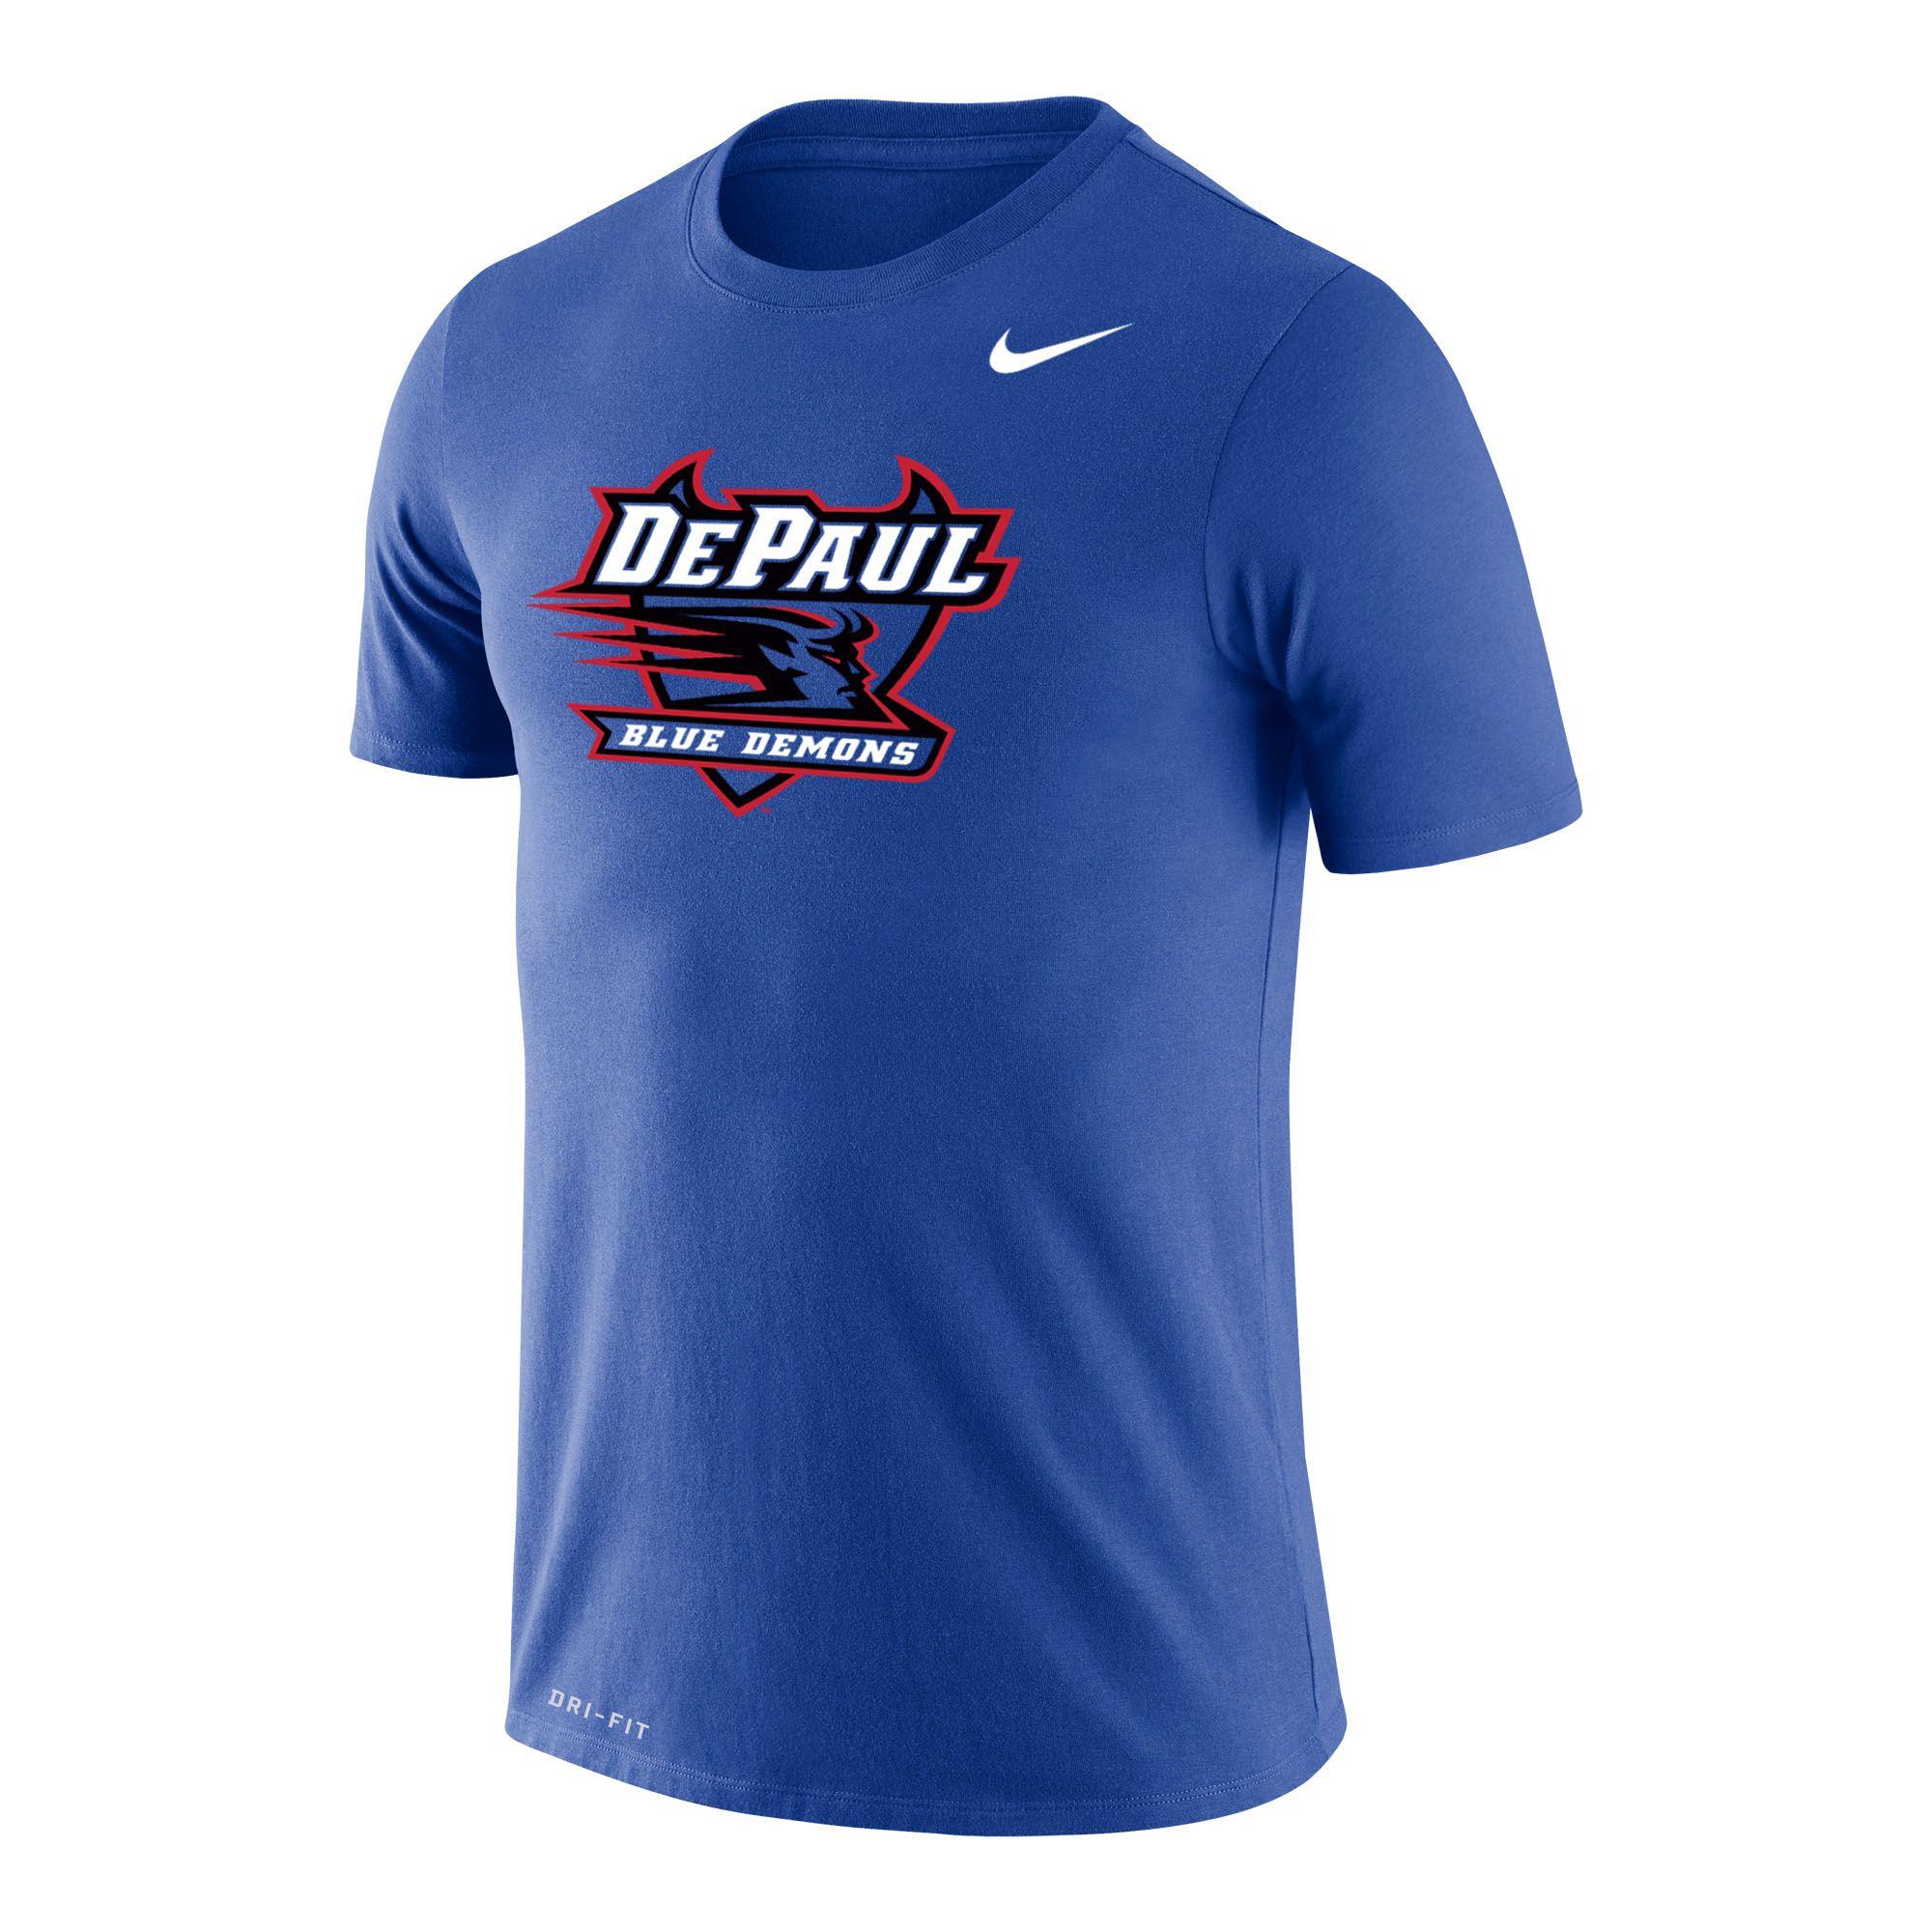 Nike Depaul Royal Blue Logo Legend Performance T-shirt for Men - Lyst